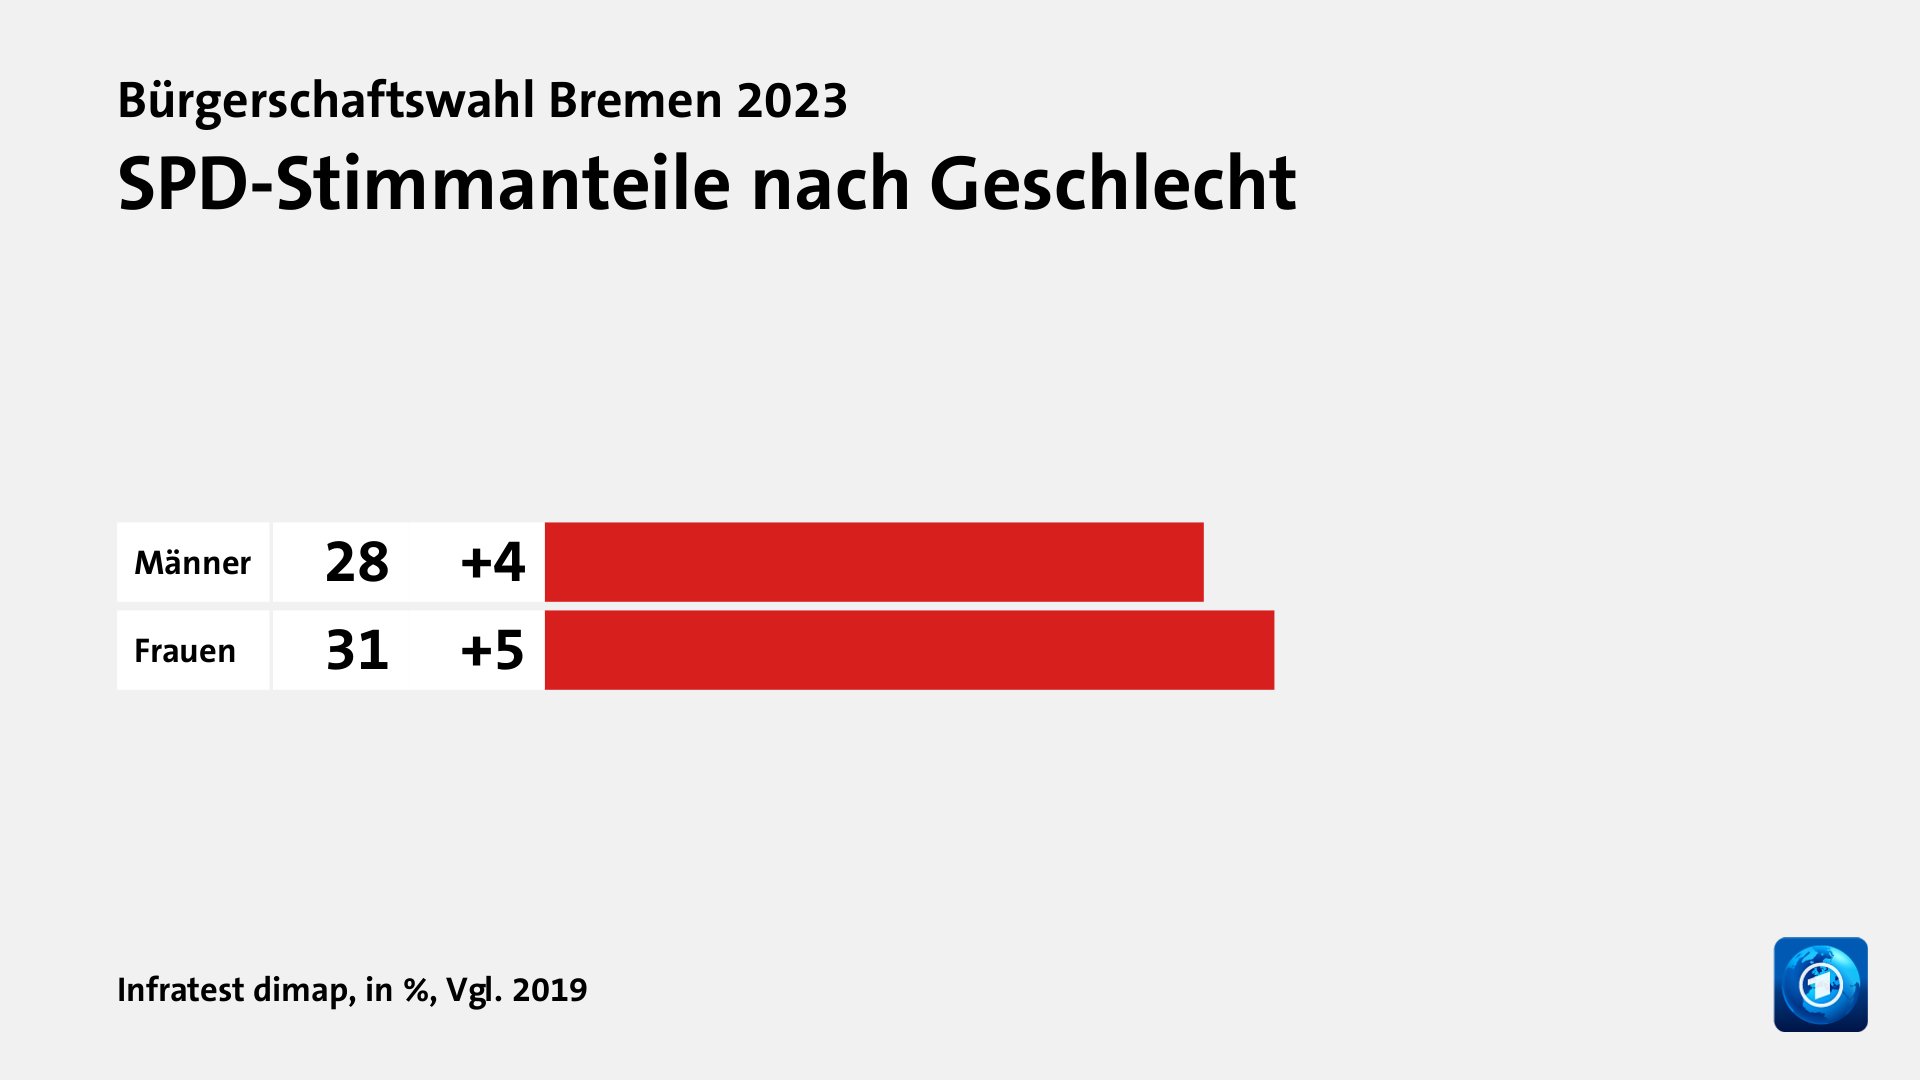 SPD-Stimmanteile nach Geschlecht, in %, Vgl. 2019: Männer 28, Frauen 31, Quelle: Infratest dimap